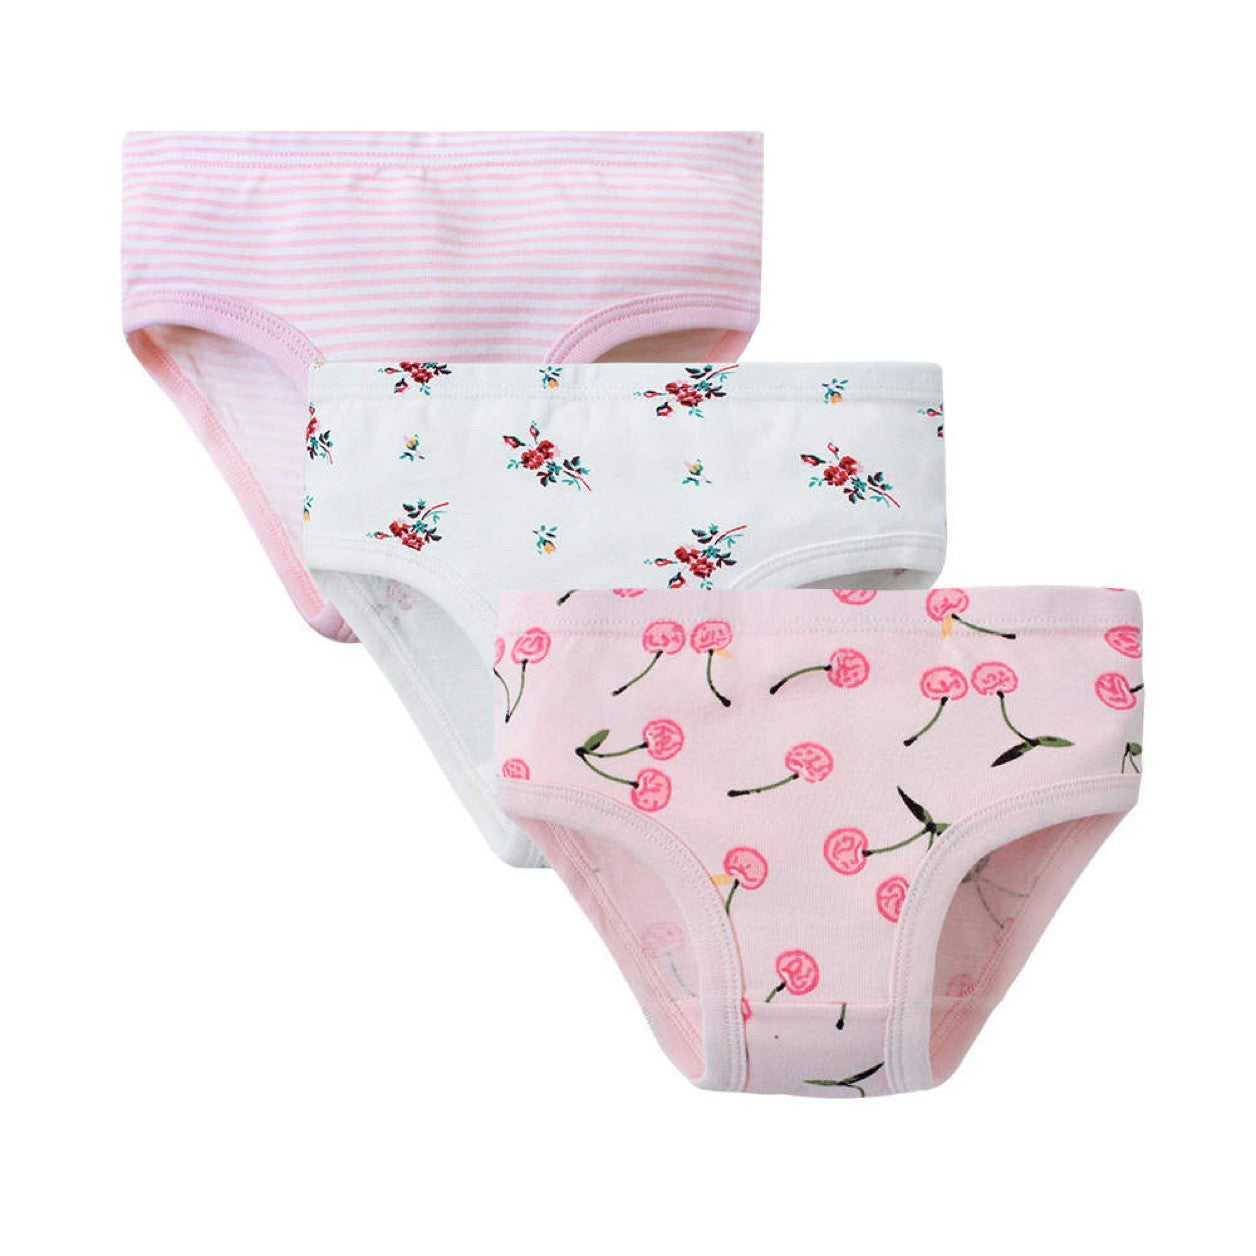 3 Pack Underwear - Cherries Stripes Flowers